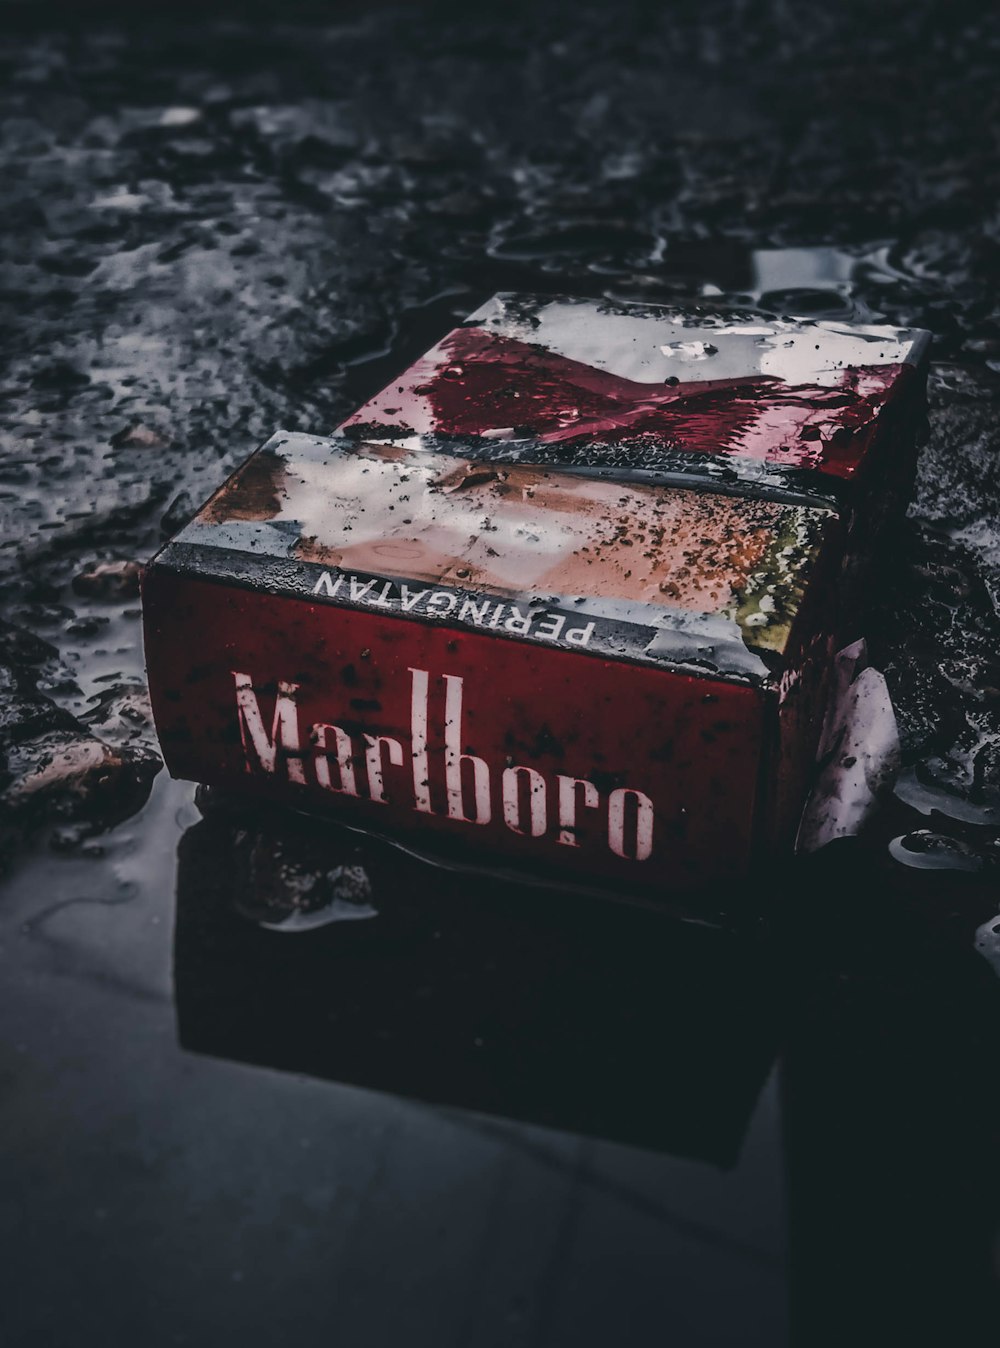 Scatola di sigarette flip-top Marlboro